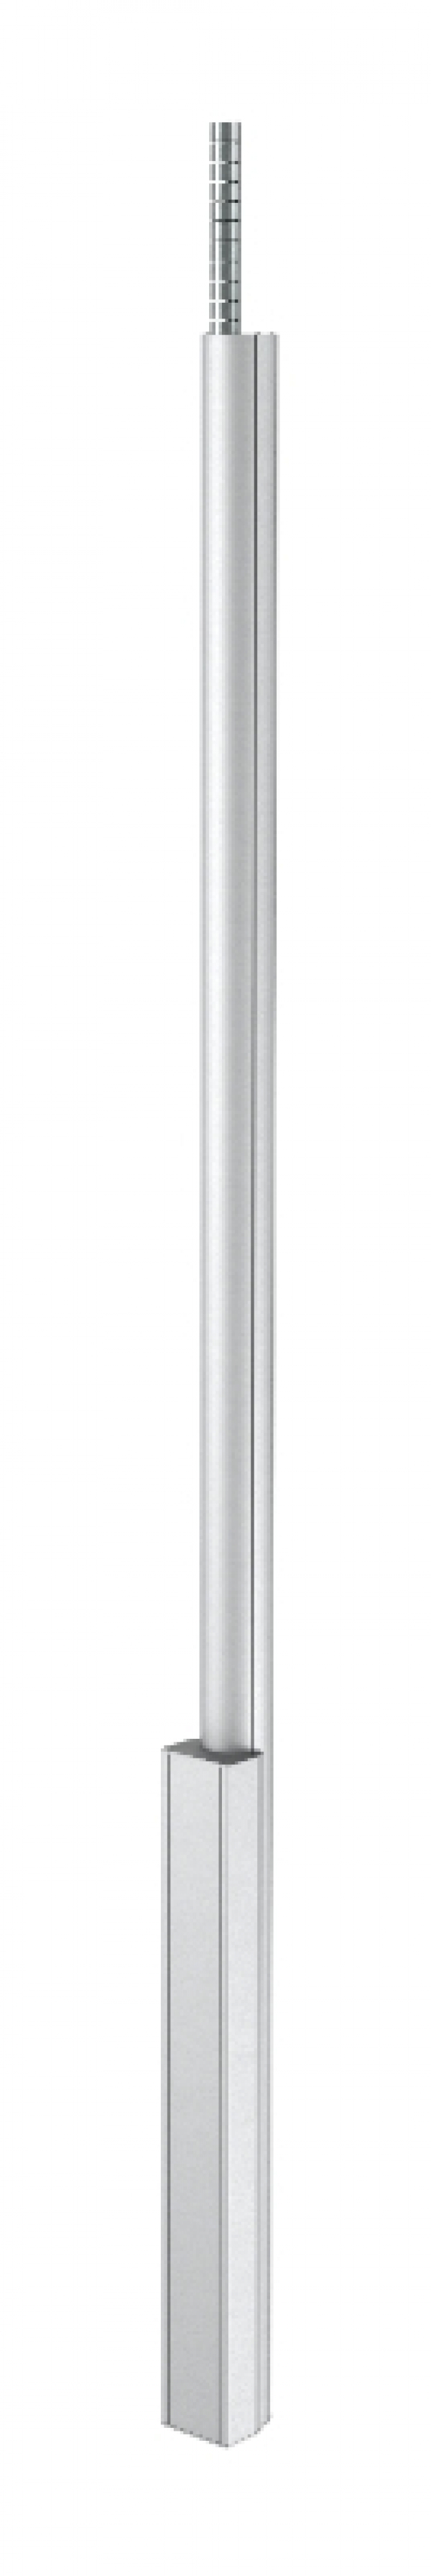 6289040 - OBO BETTERMANN Электромонтажная колонна 2,3-3,8 м 1-сторонняя 100x110x2300 мм (алюминий,белый) (ISS110100FRW).